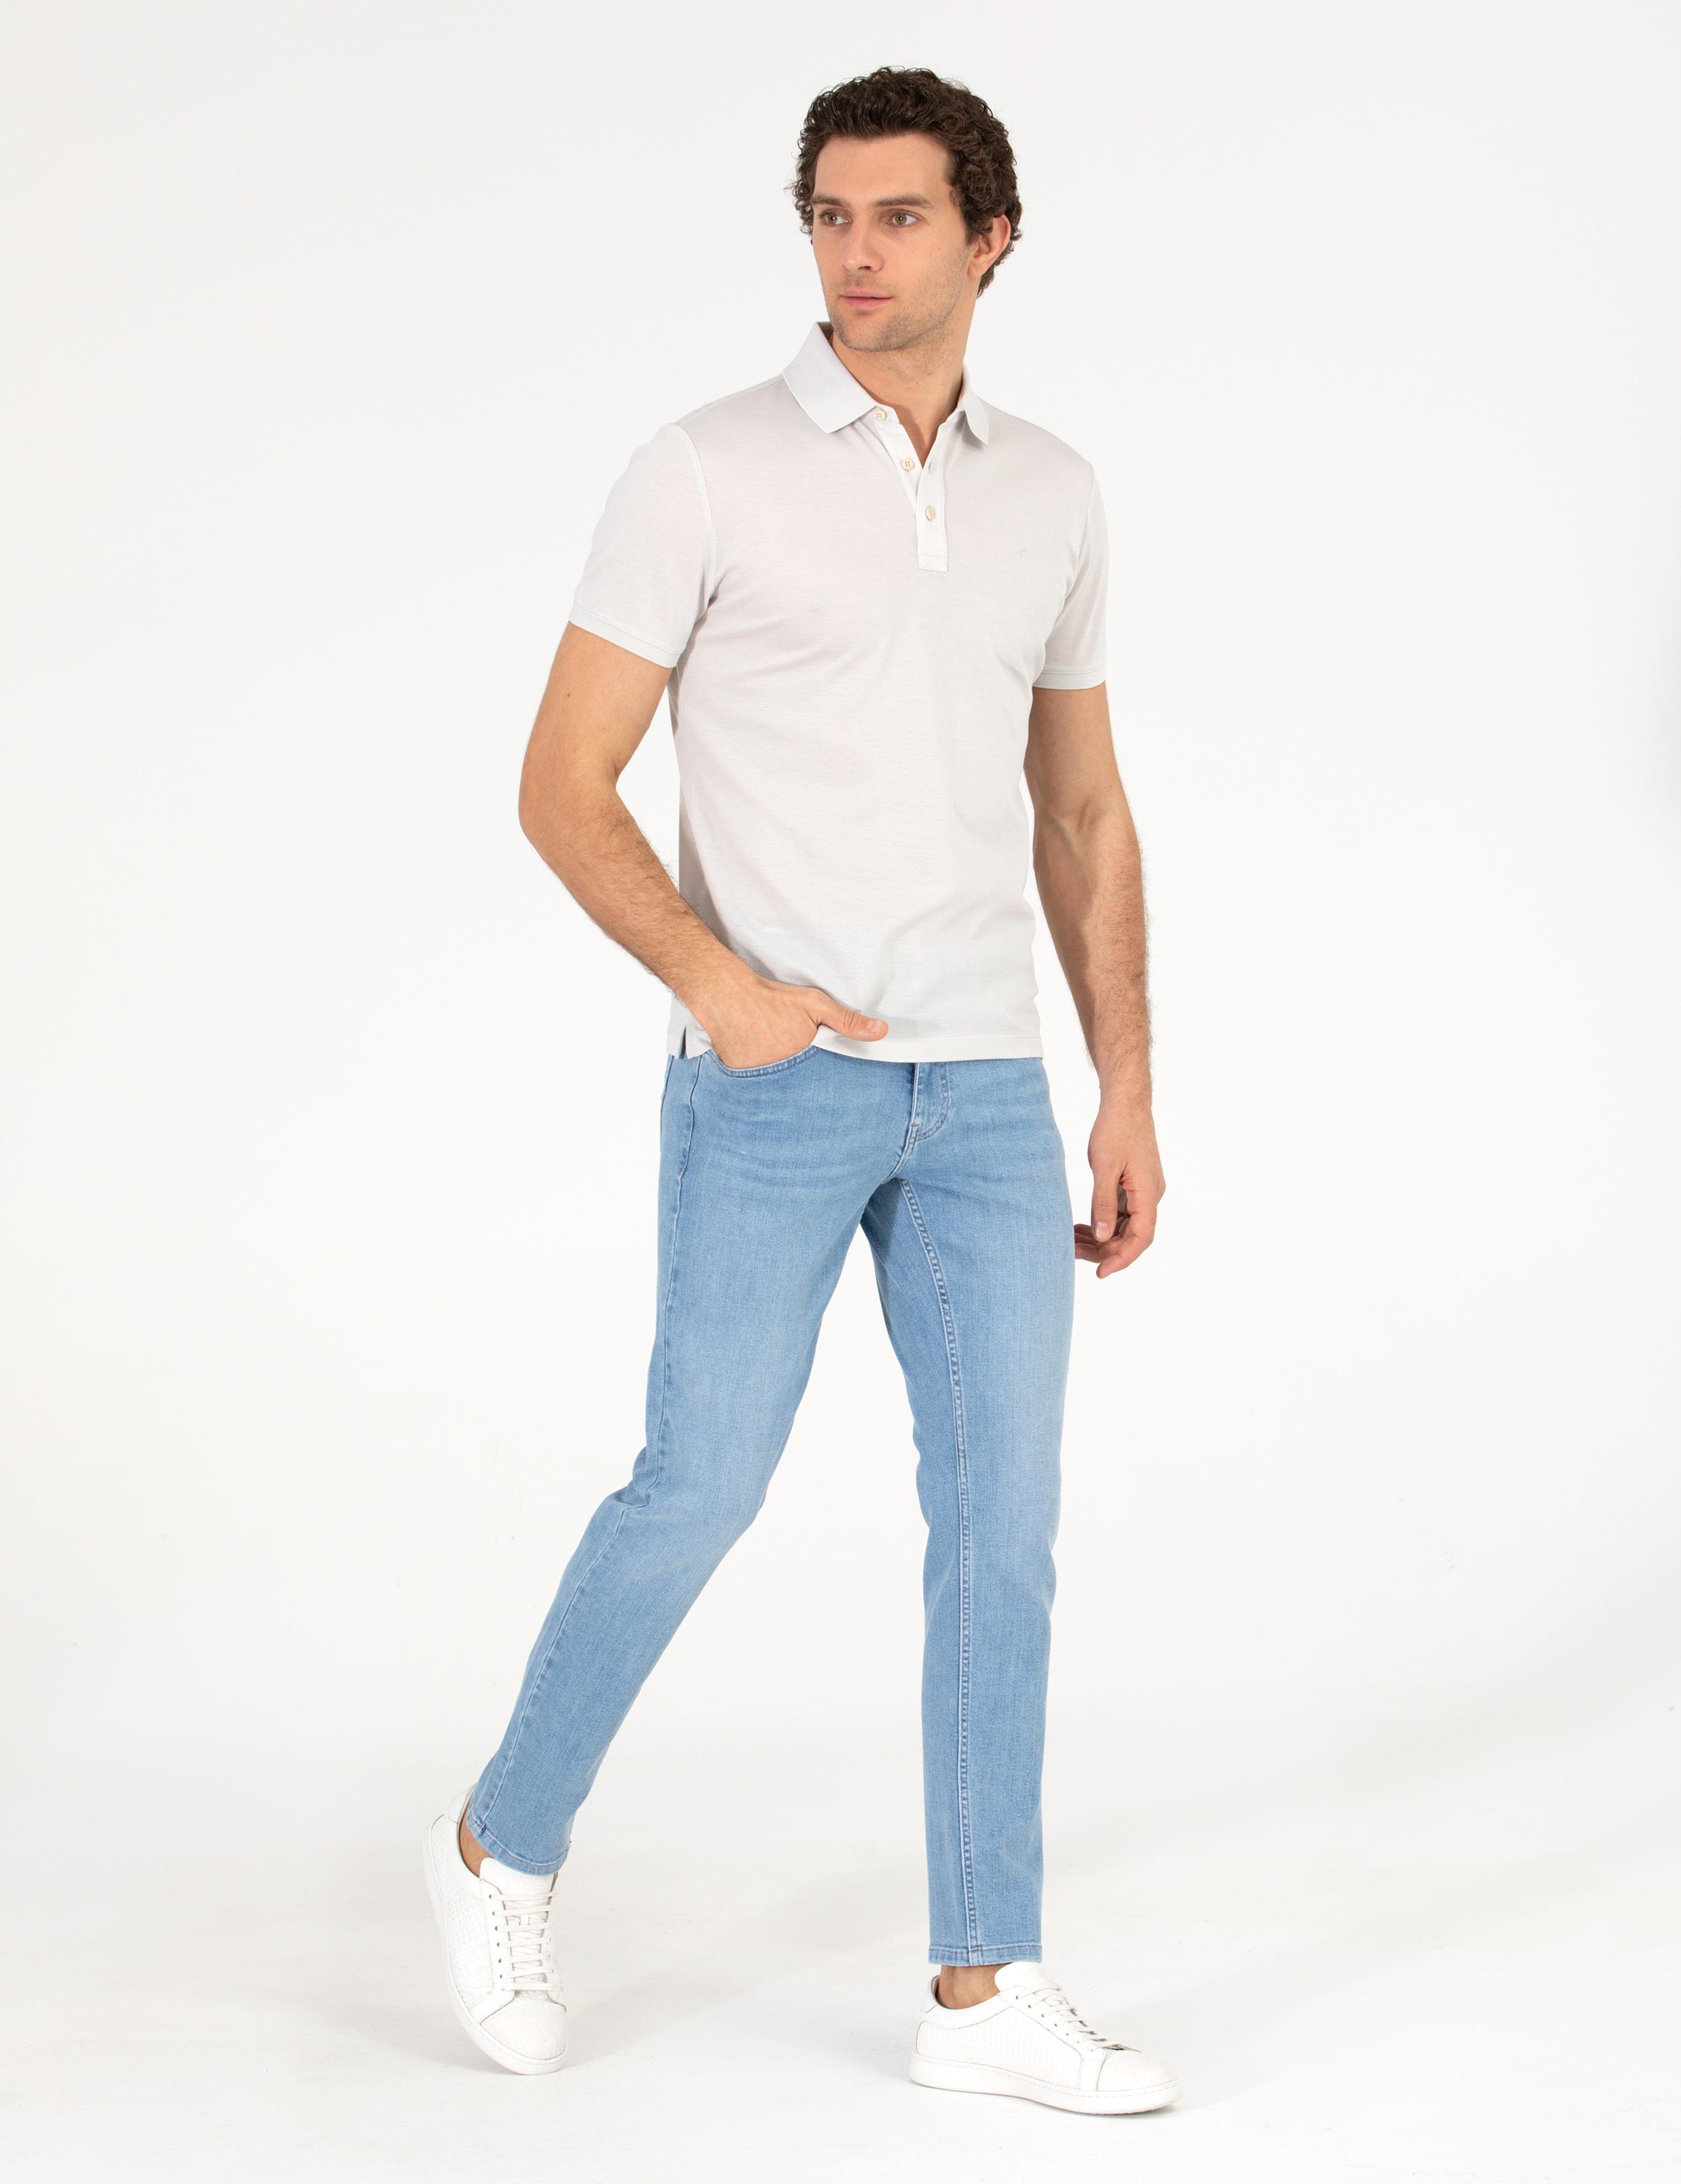 Açık Gri Polo Yaka Slim Fit Basic T-Shirt - 50265364176